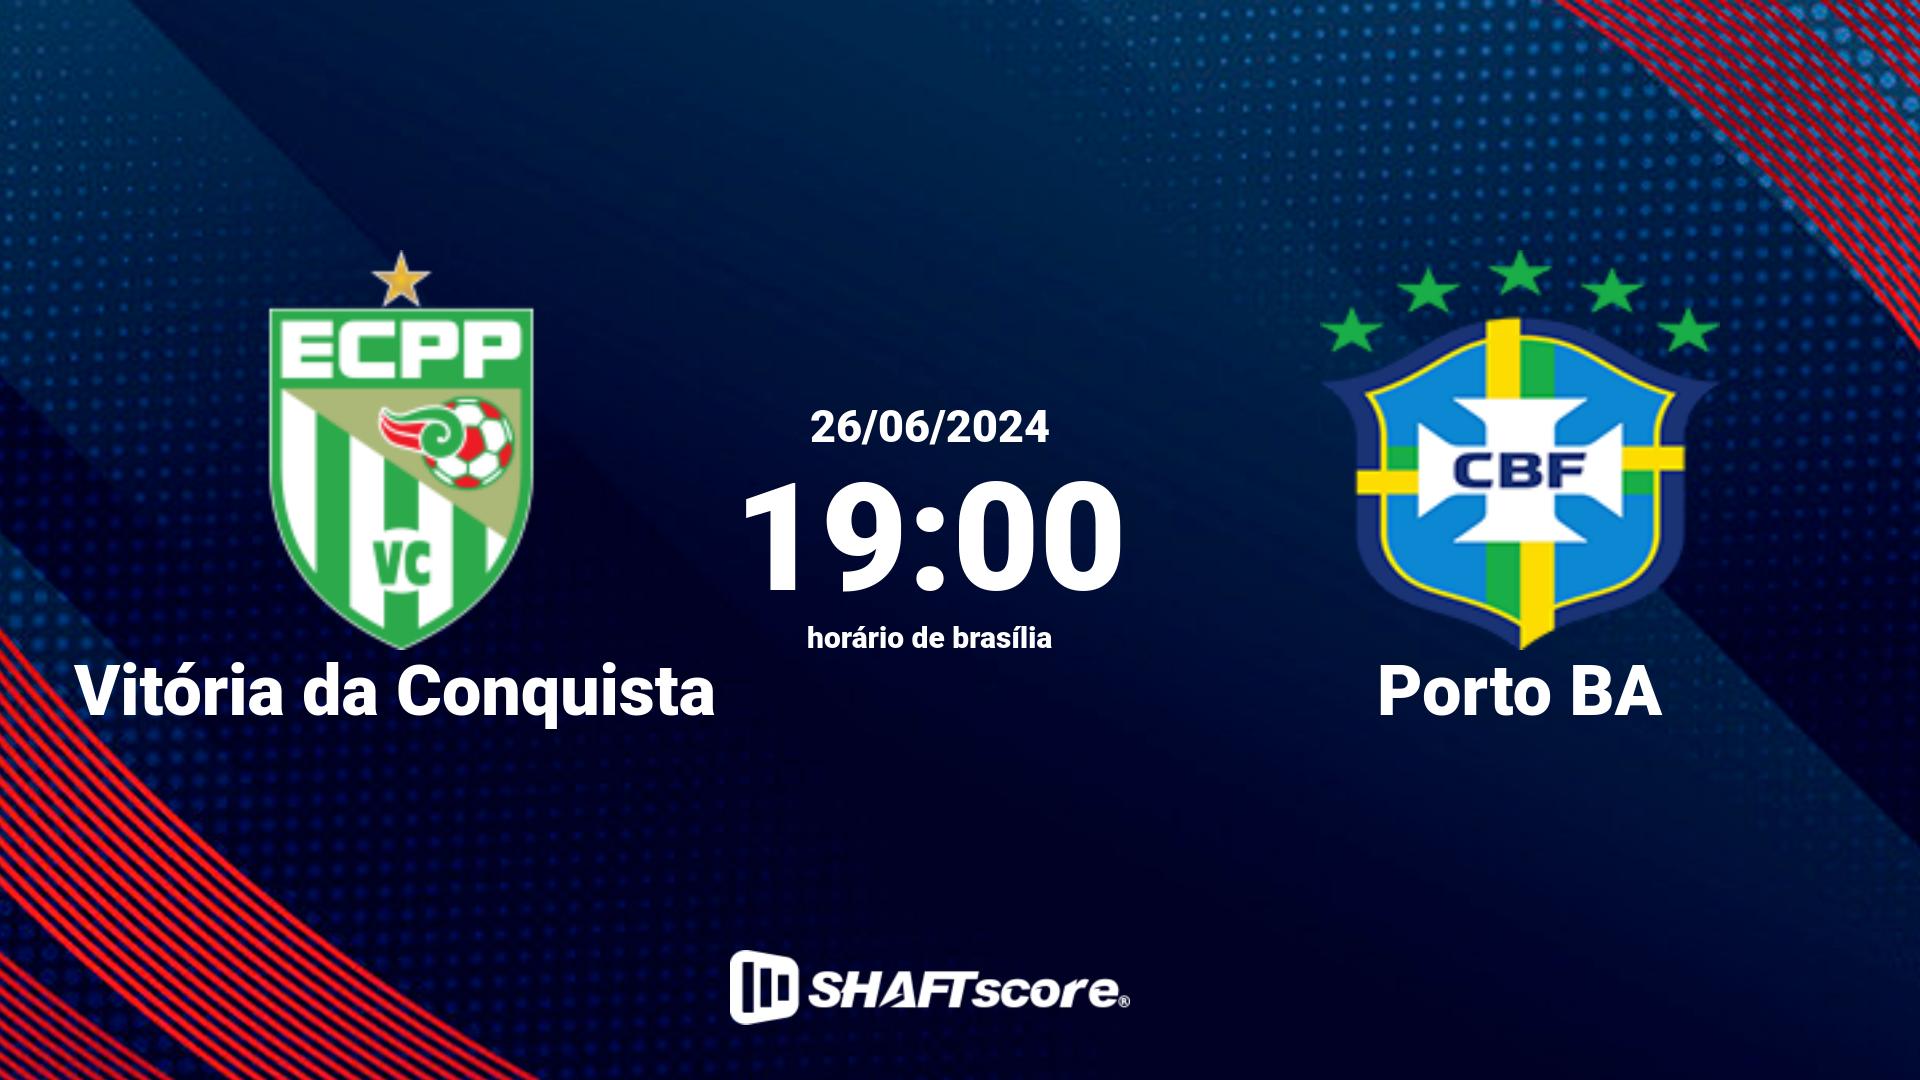 Estatísticas do jogo Vitória da Conquista vs Porto BA 26.06 19:00